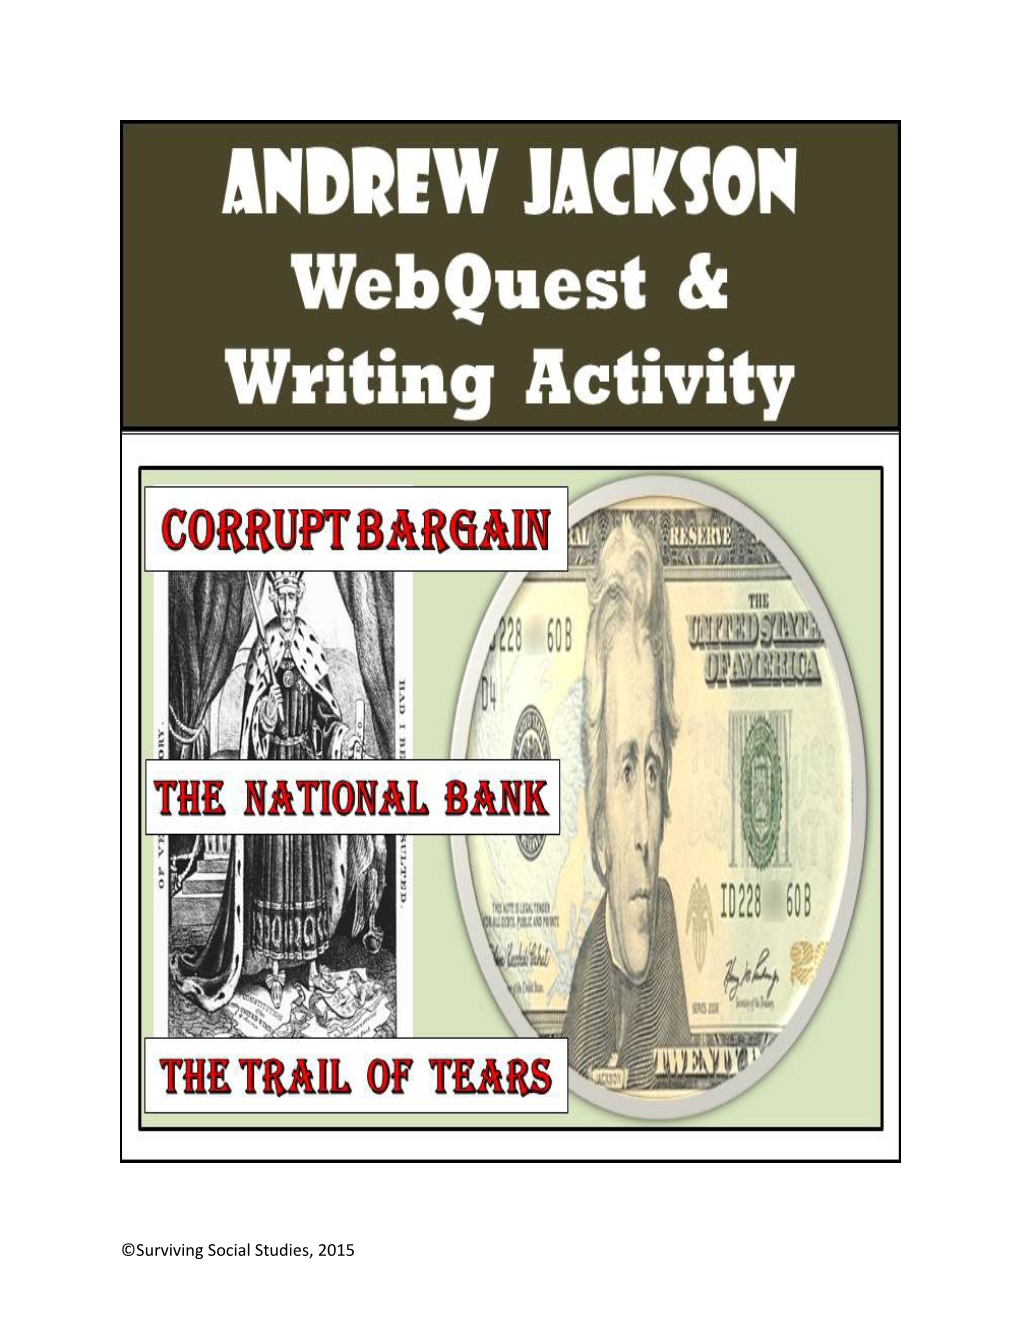 Andrew Jackson Web Quest